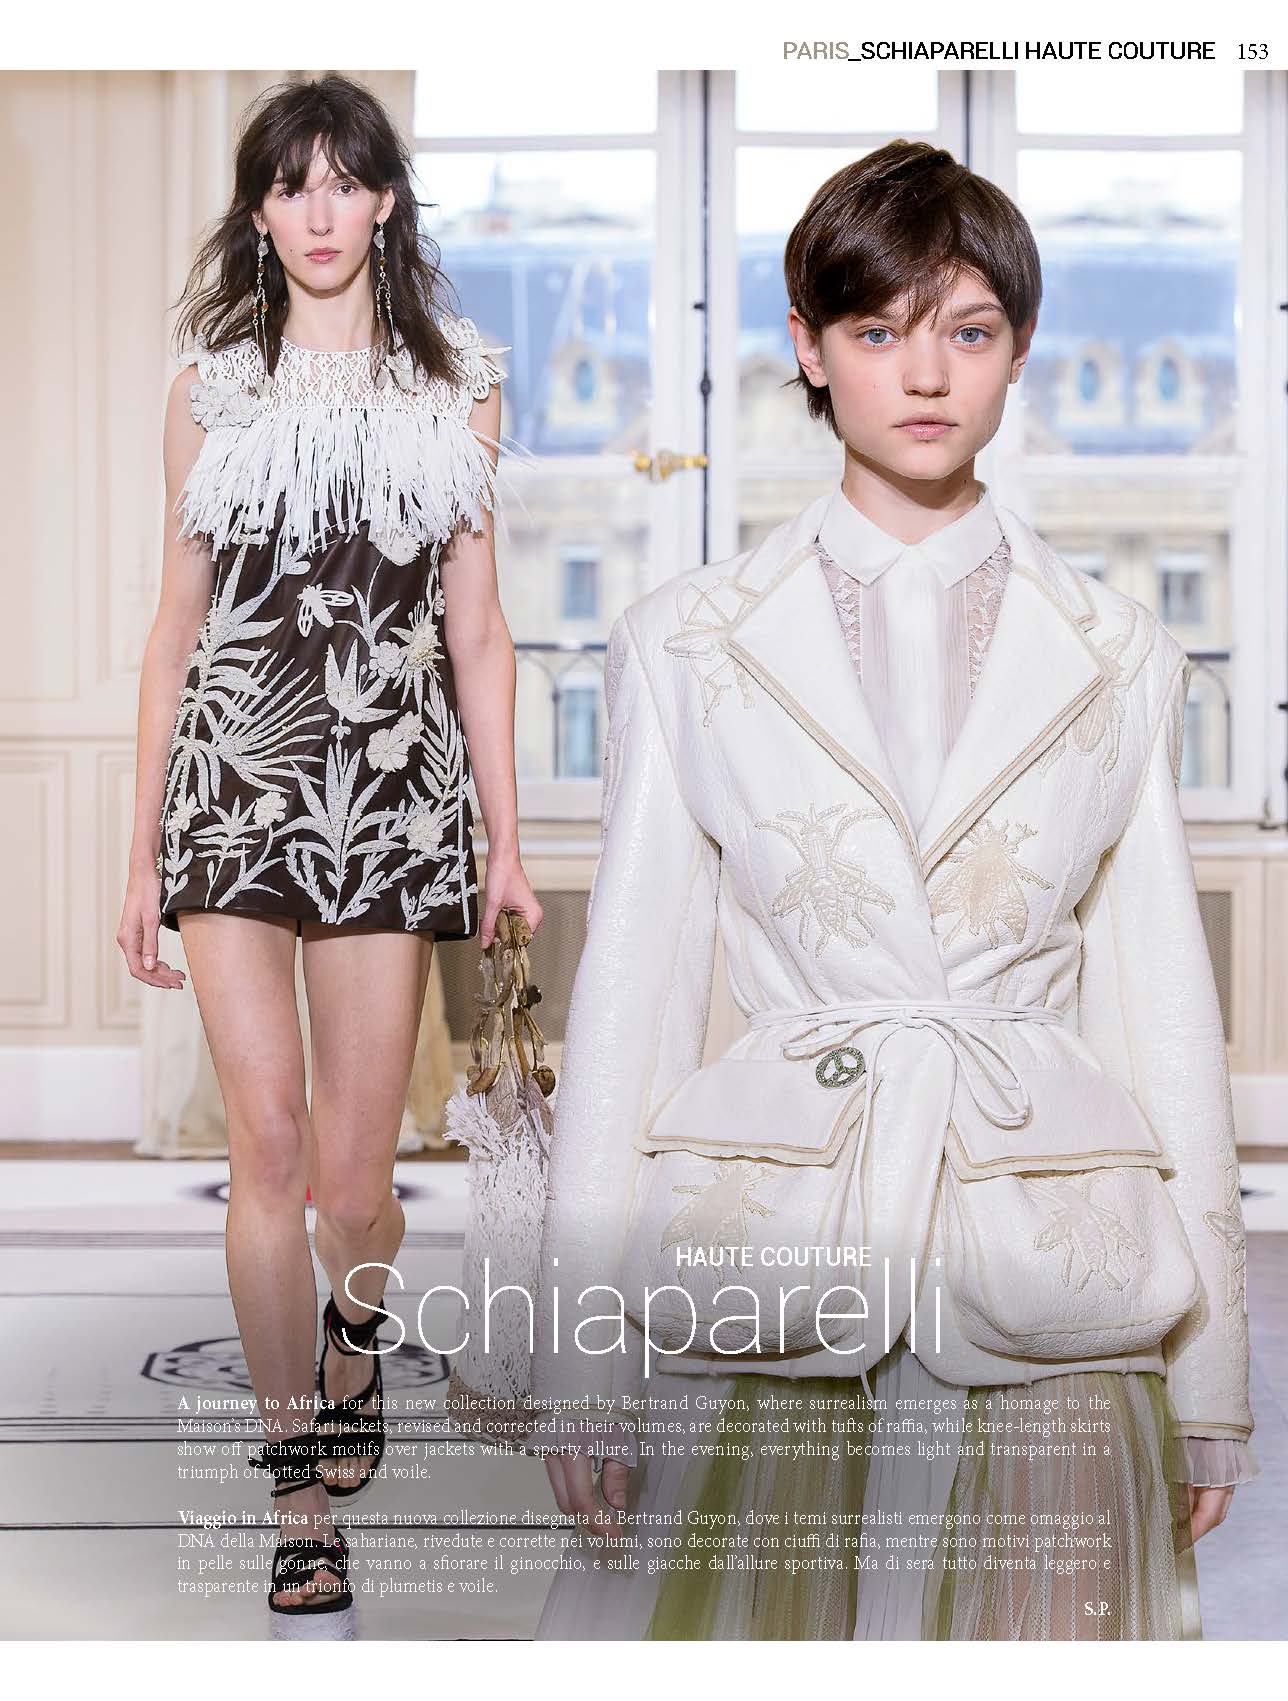 SCHAP _Haute Couture&Sposa167_March 18-17_Page_1